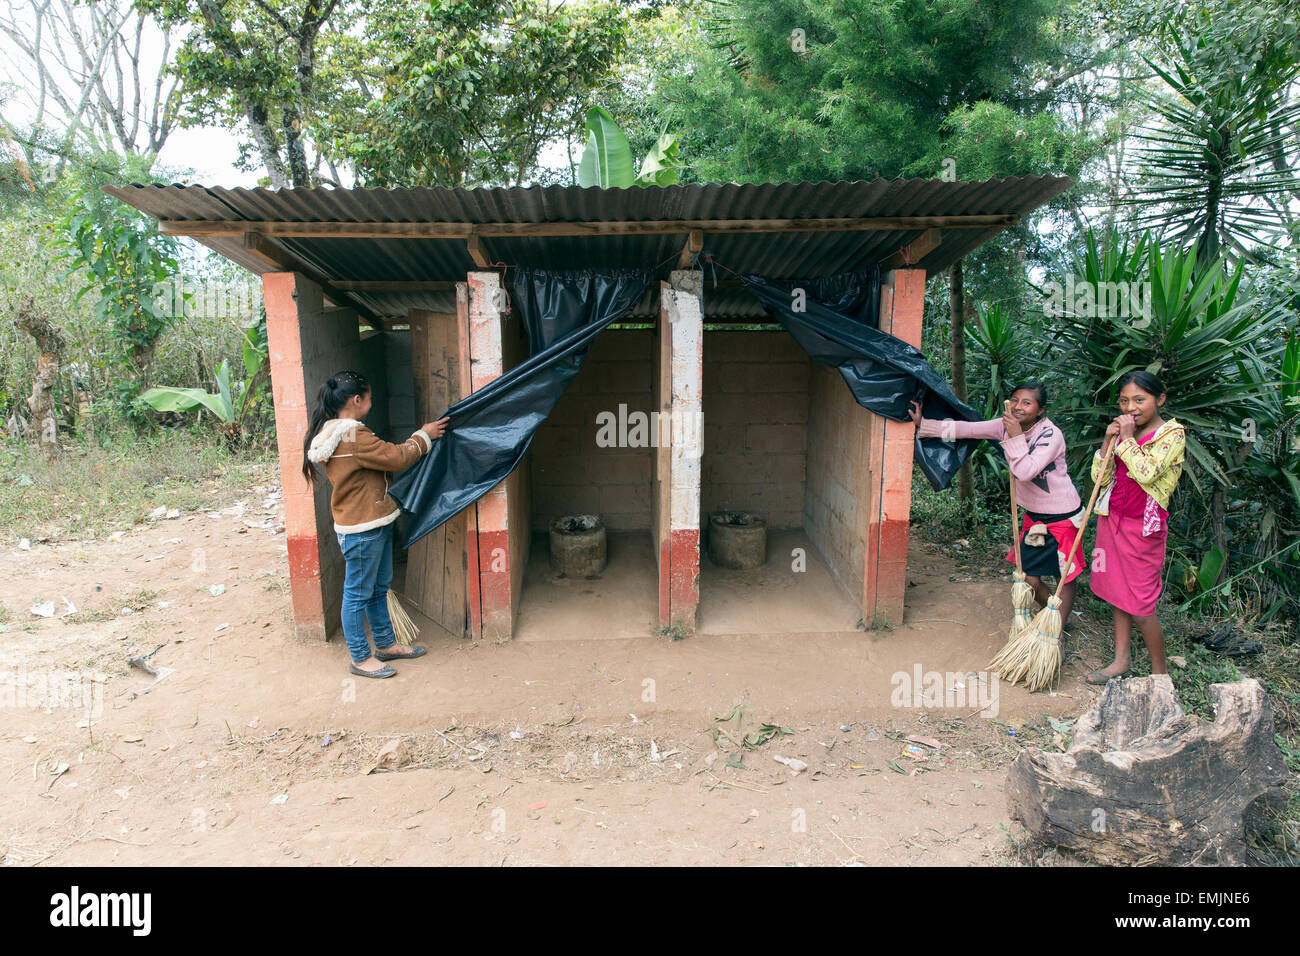 Guatemala, Jalapa, Schülerinnen und Schüler eine Outdoor-Latrine anzeigen Stockfoto